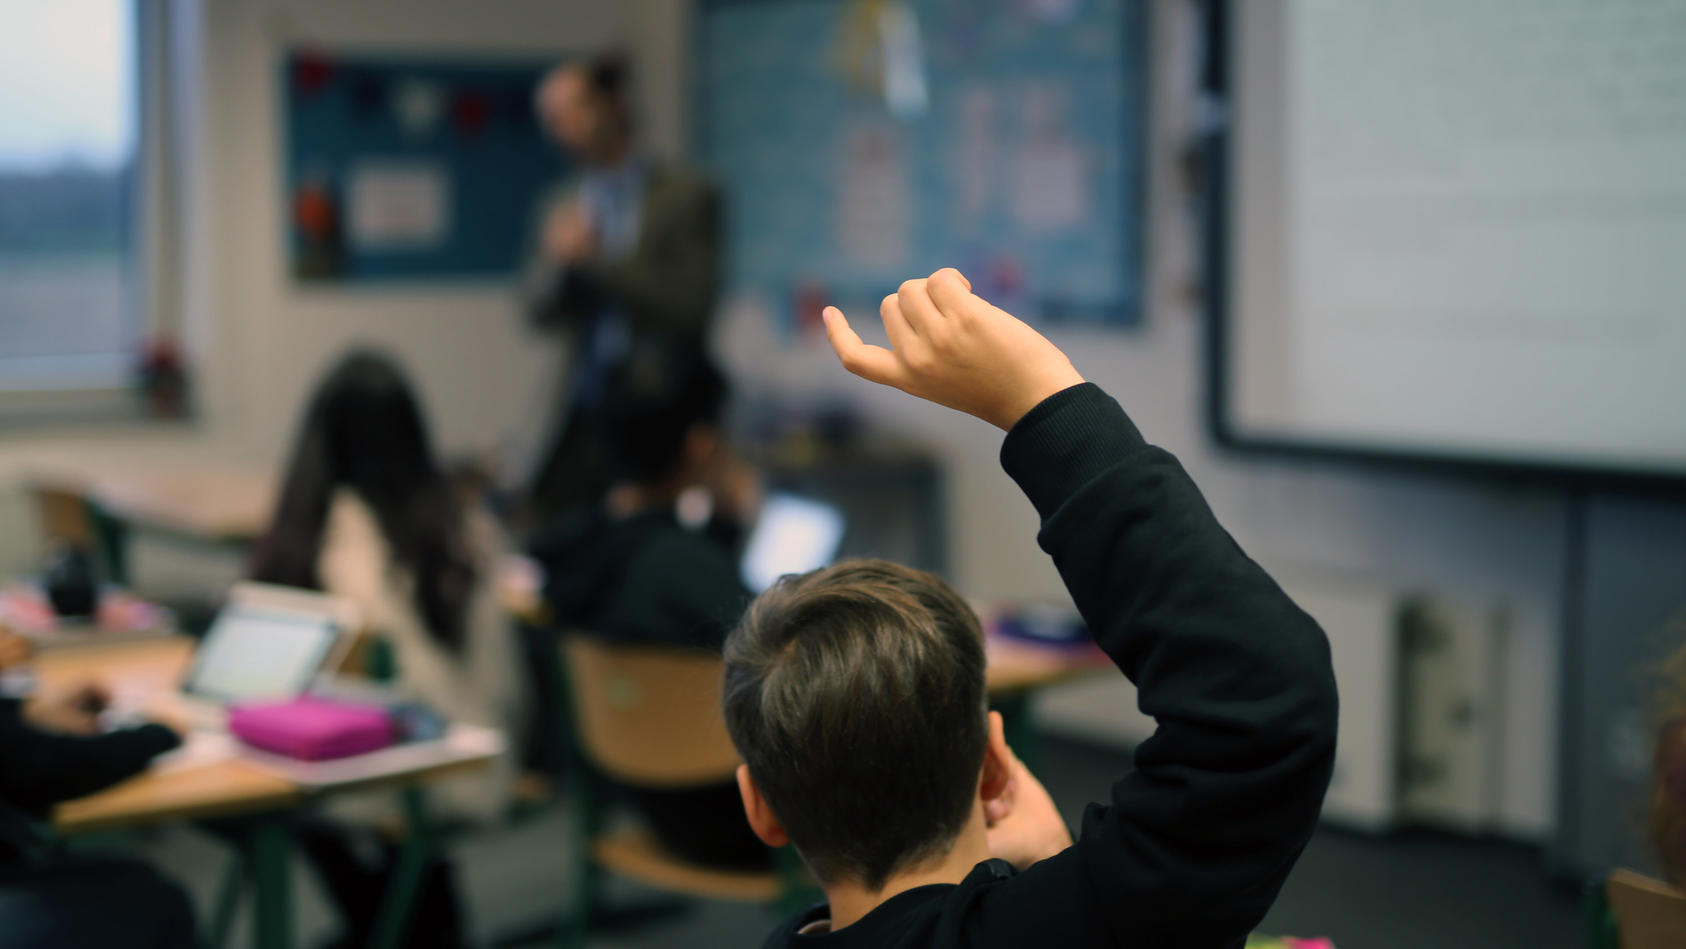 ARCHIV - 15.12.2017, Neuss: Eine Schüler hebt im digitalen Unterricht seine Hand hoch.   (zu dpa «10 000 Lehrer haben sich seit Corona zu Digitaler Schule fortgebildet») Foto: picture alliance / Ina Fassbender/dpa +++ dpa-Bildfunk +++